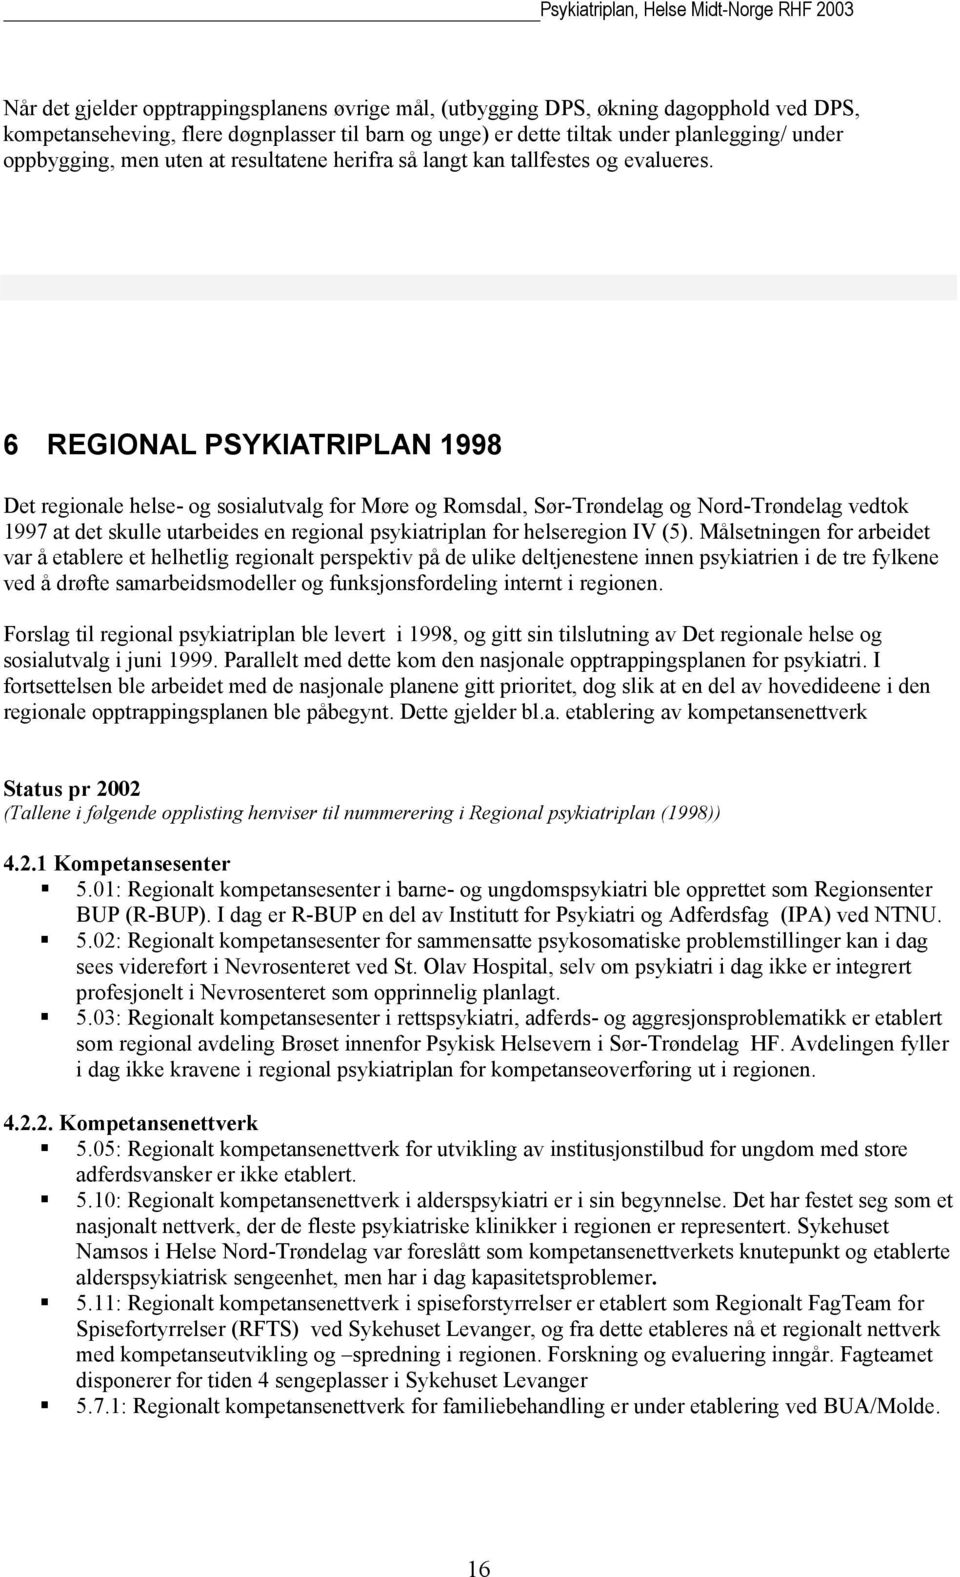 6 REGIONAL PSYKIATRIPLAN 1998 Det regionale helse- og sosialutvalg for Møre og Romsdal, Sør-Trøndelag og Nord-Trøndelag vedtok 1997 at det skulle utarbeides en regional psykiatriplan for helseregion